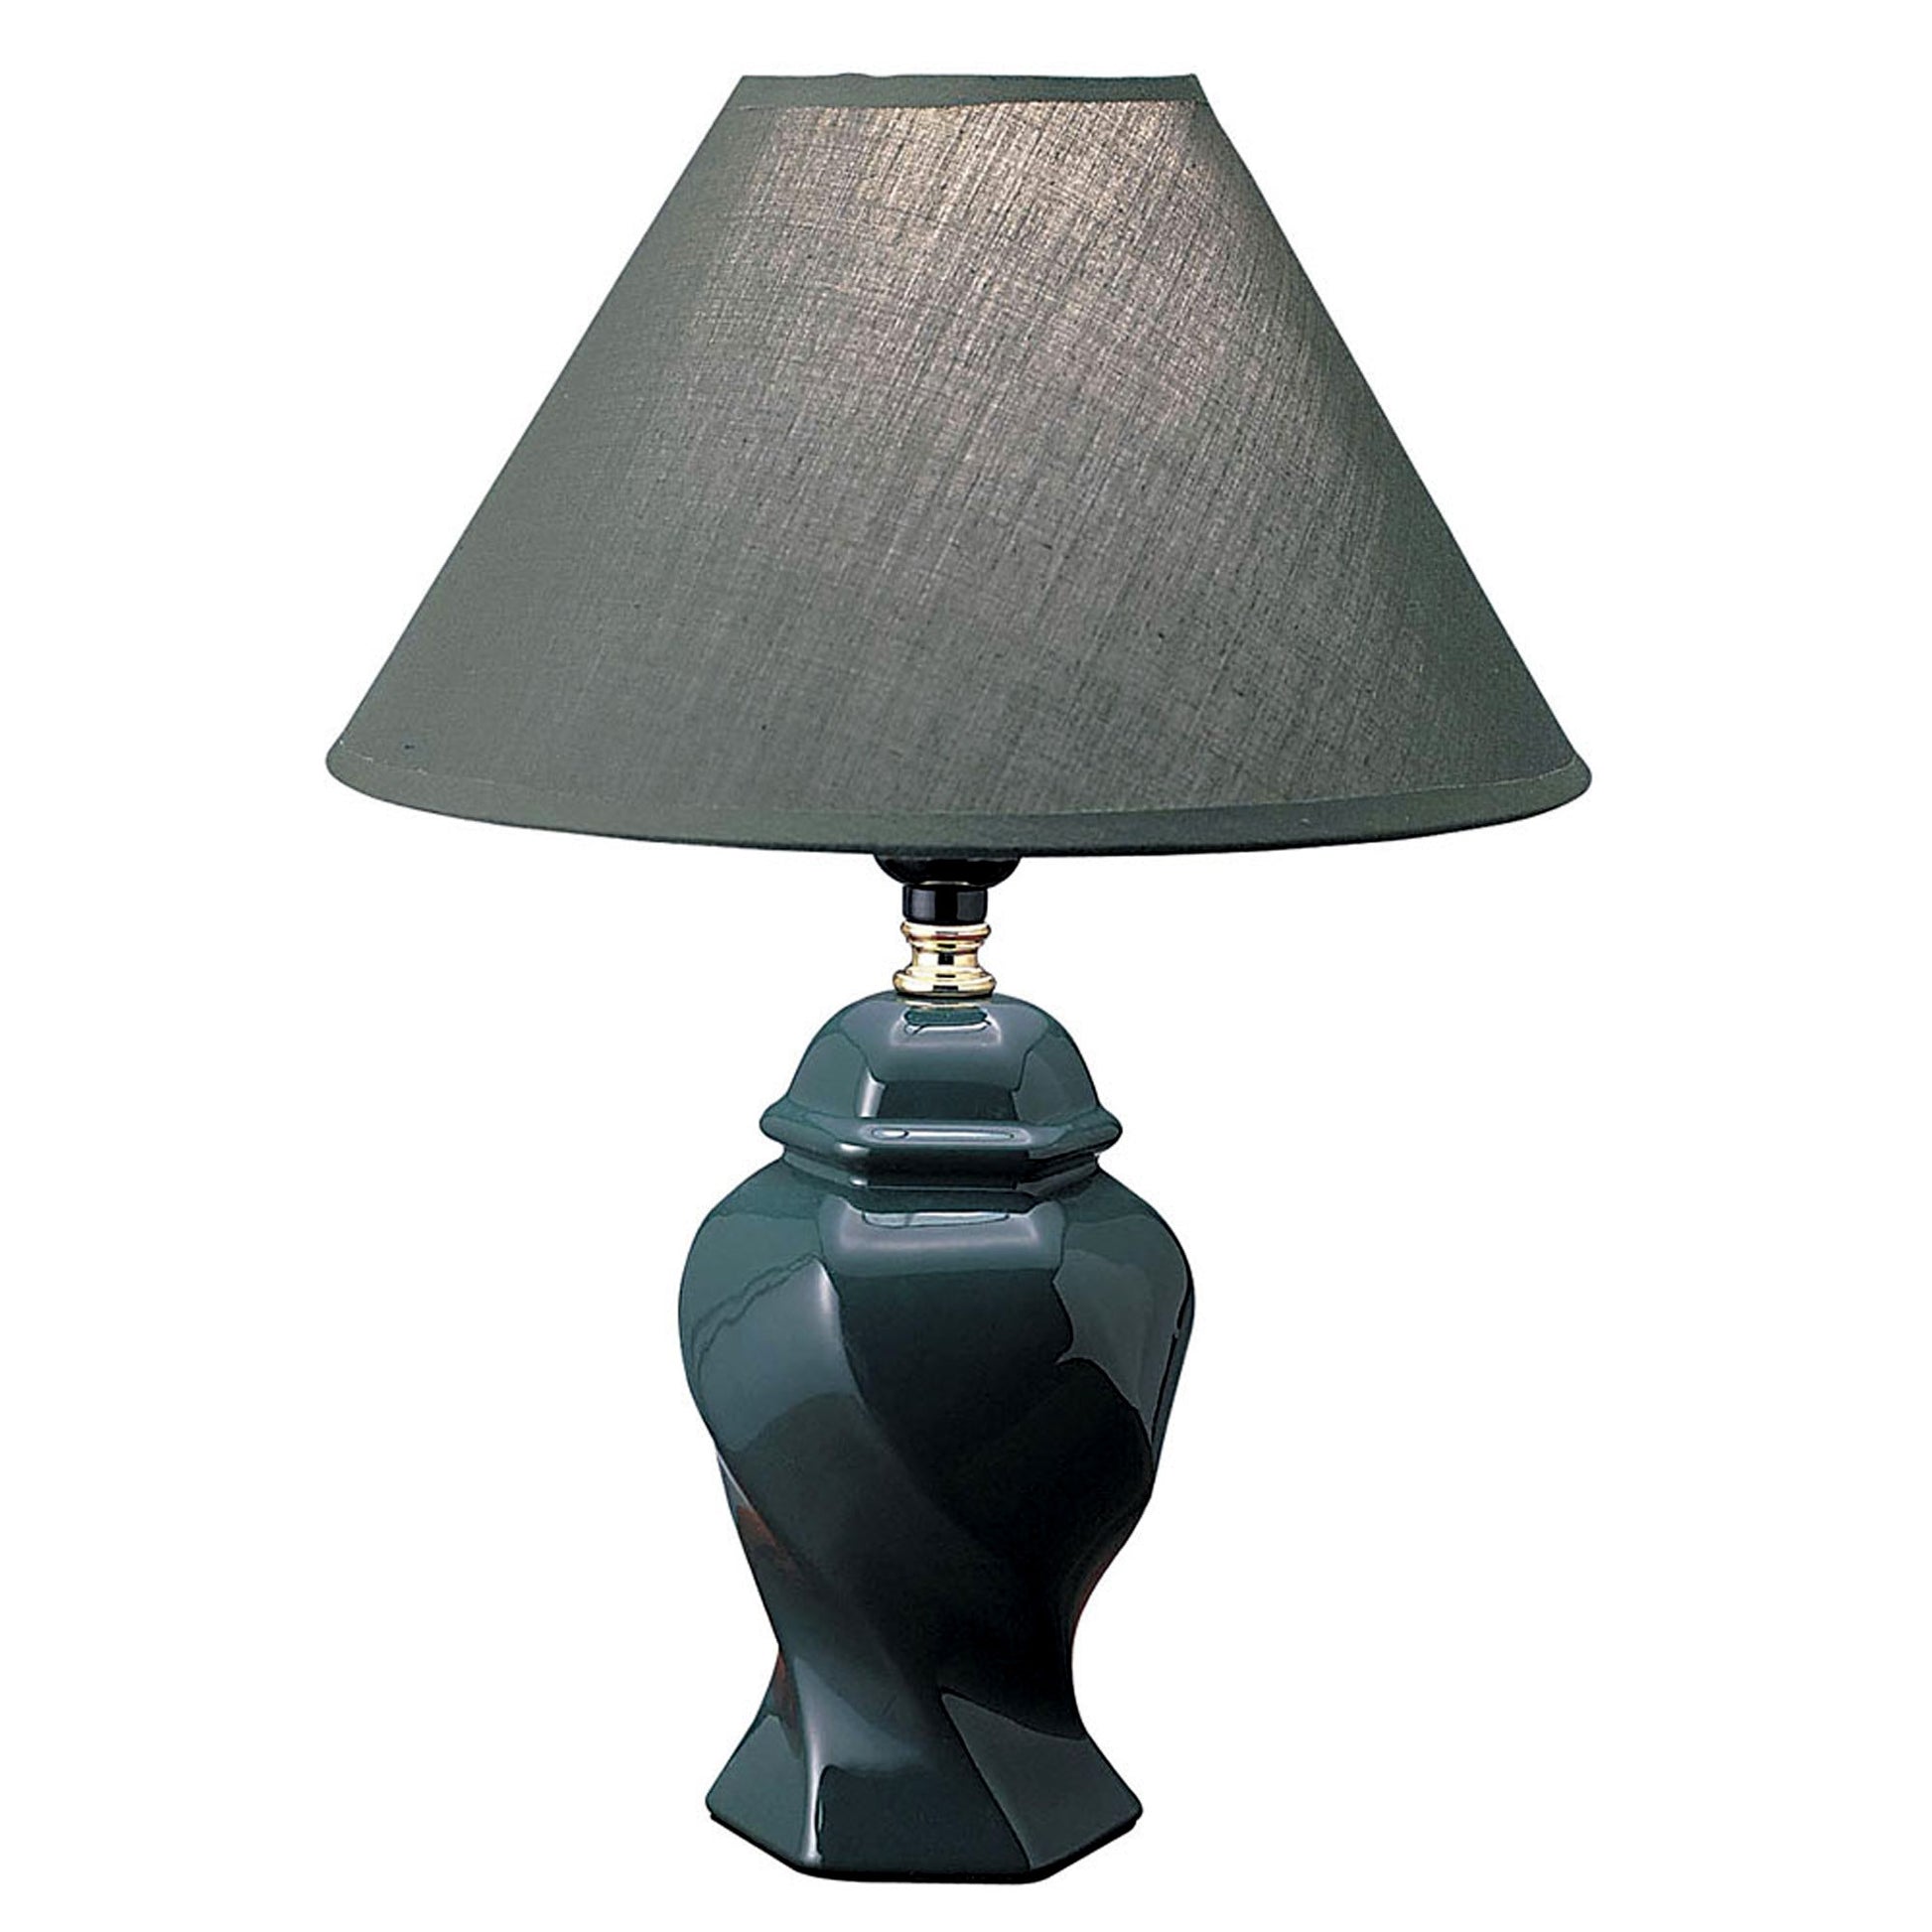 Black Urn Shaped Table Lamp | Table Lamps | Modishstore - 9